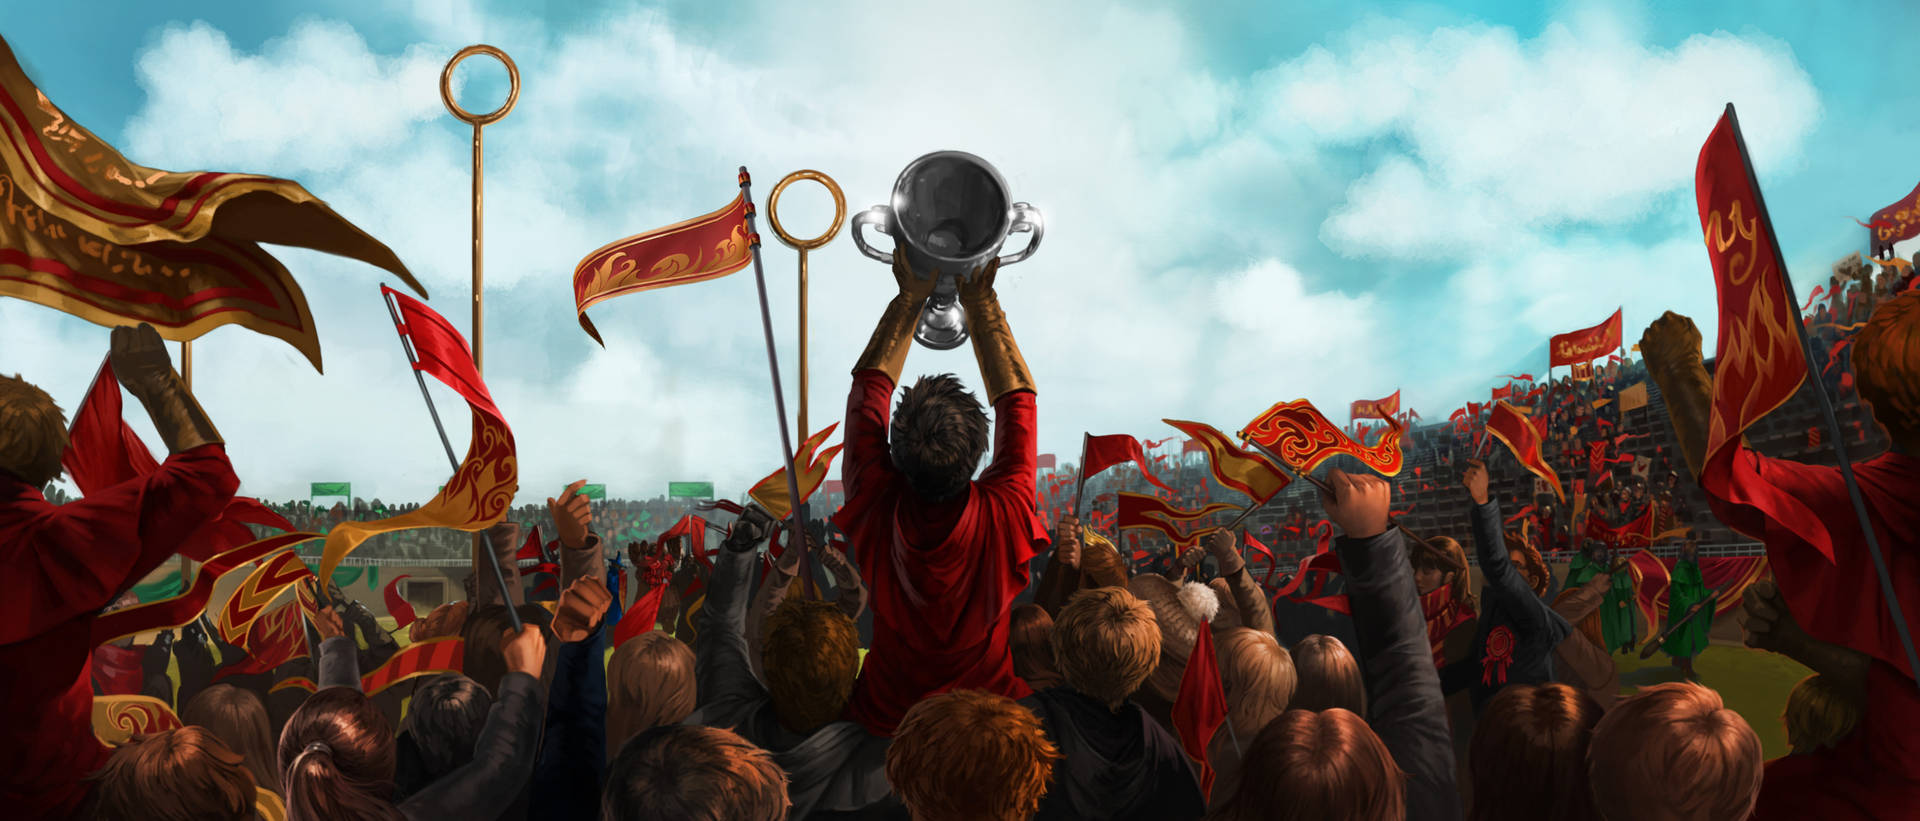 Gryffindor Quidditch Victory Celebration Wallpaper